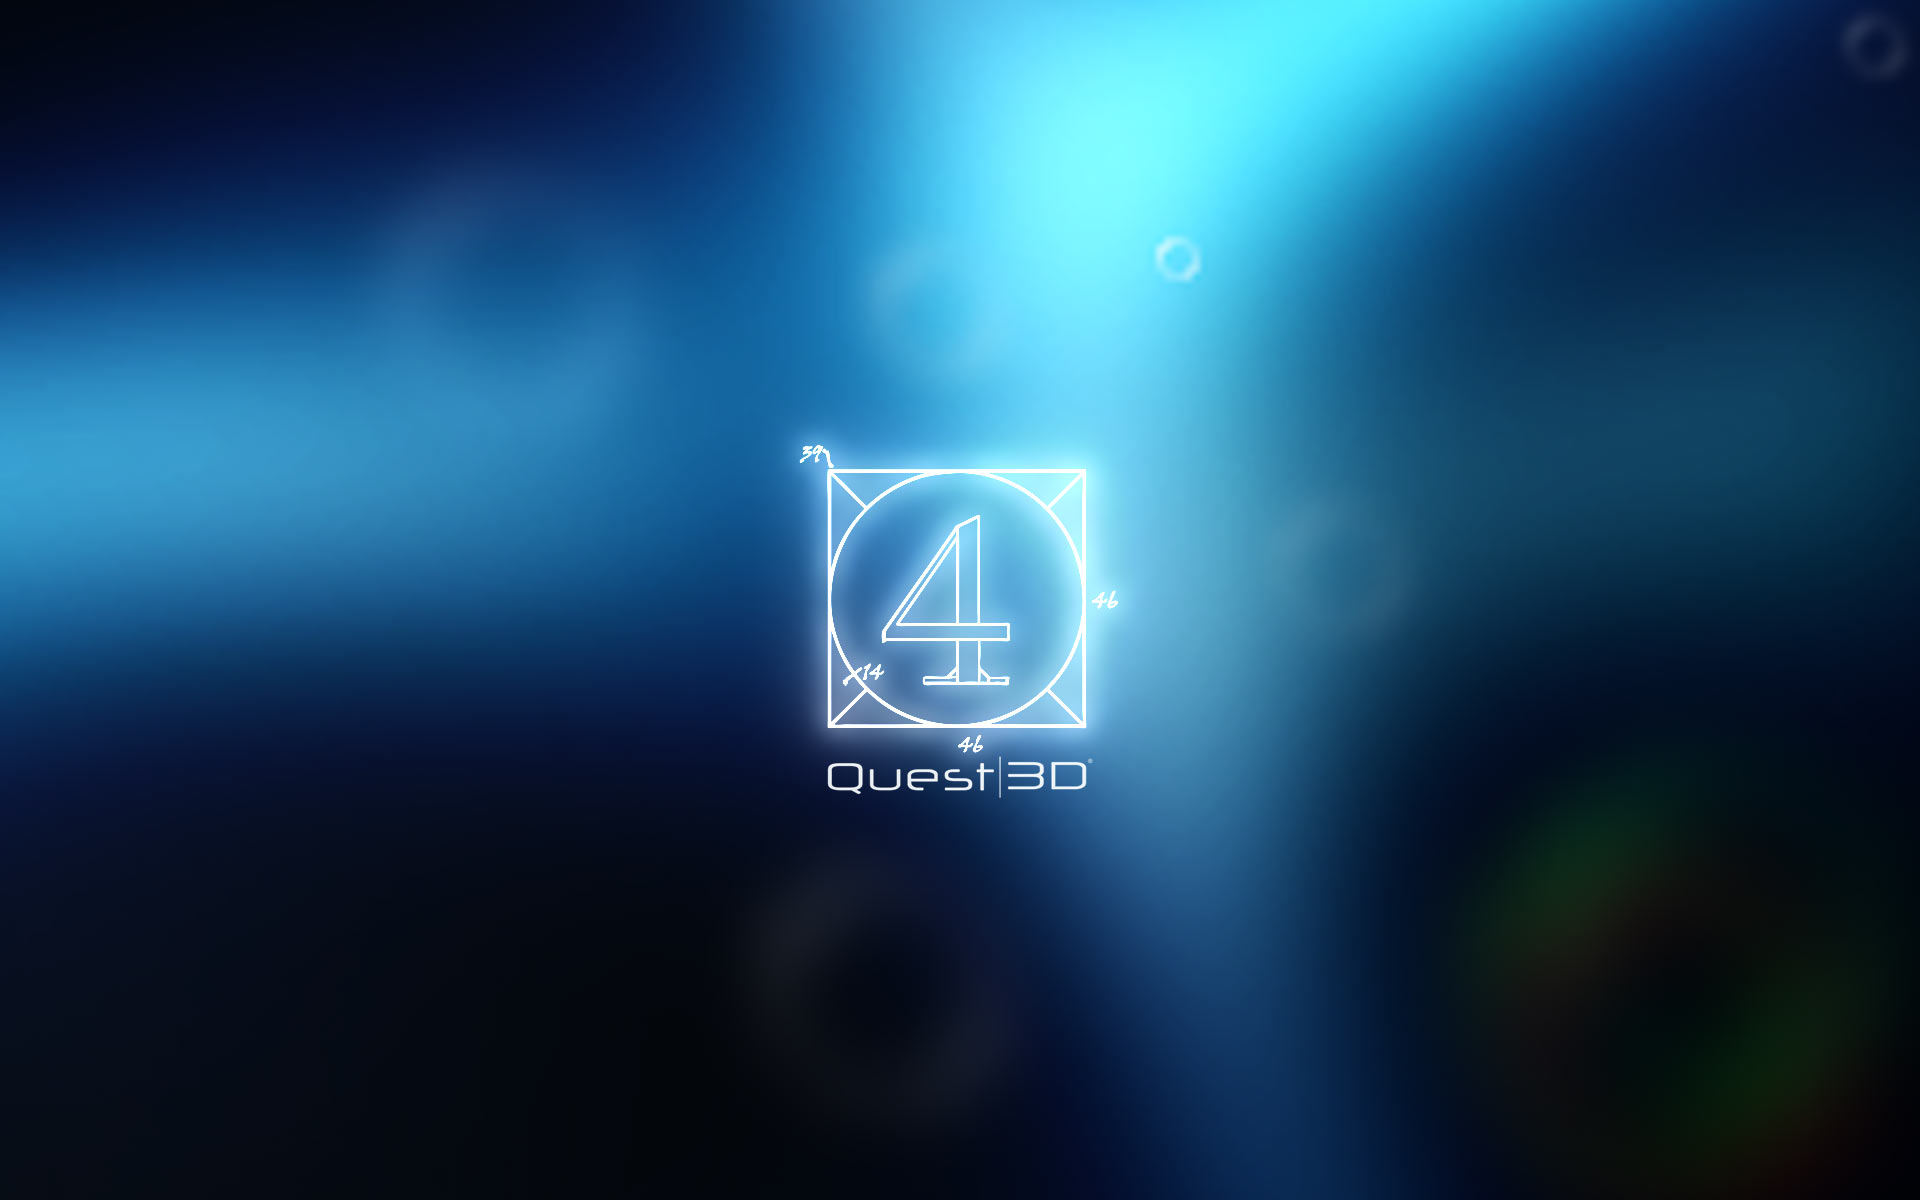 quest 3d - Quest 3D